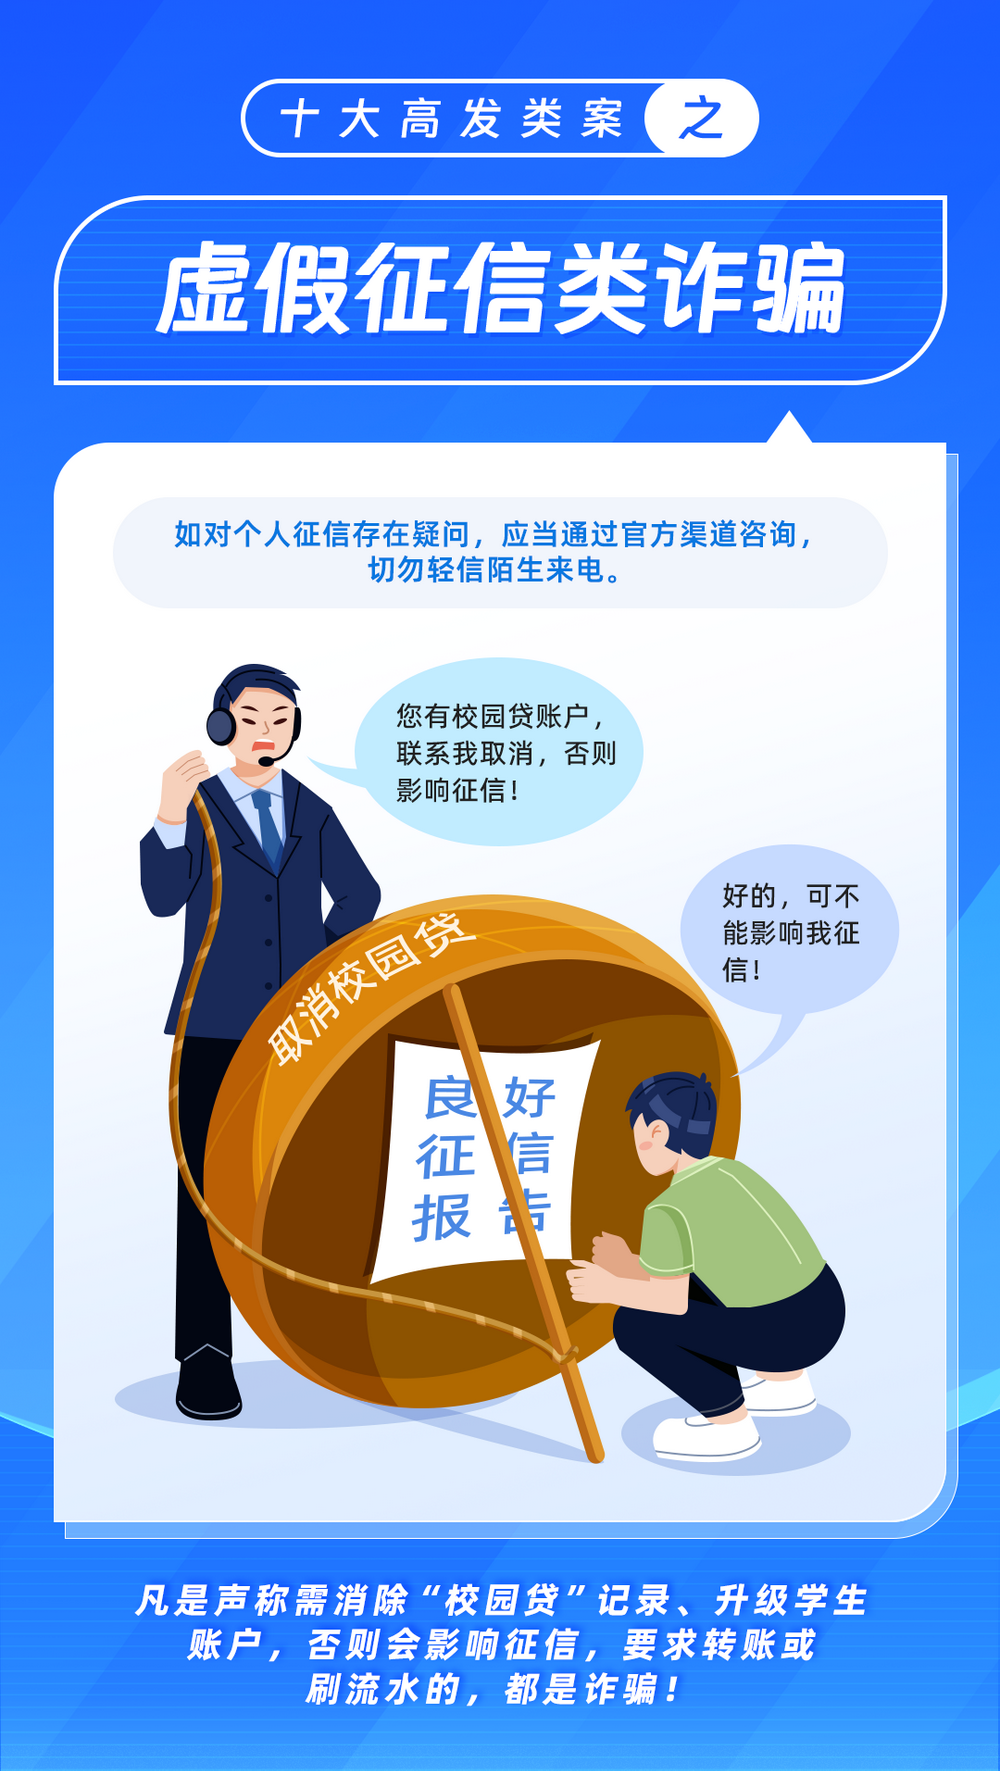 【典型案例五】杨某接到一个自称上海市公安局警察的电话,称杨某名下